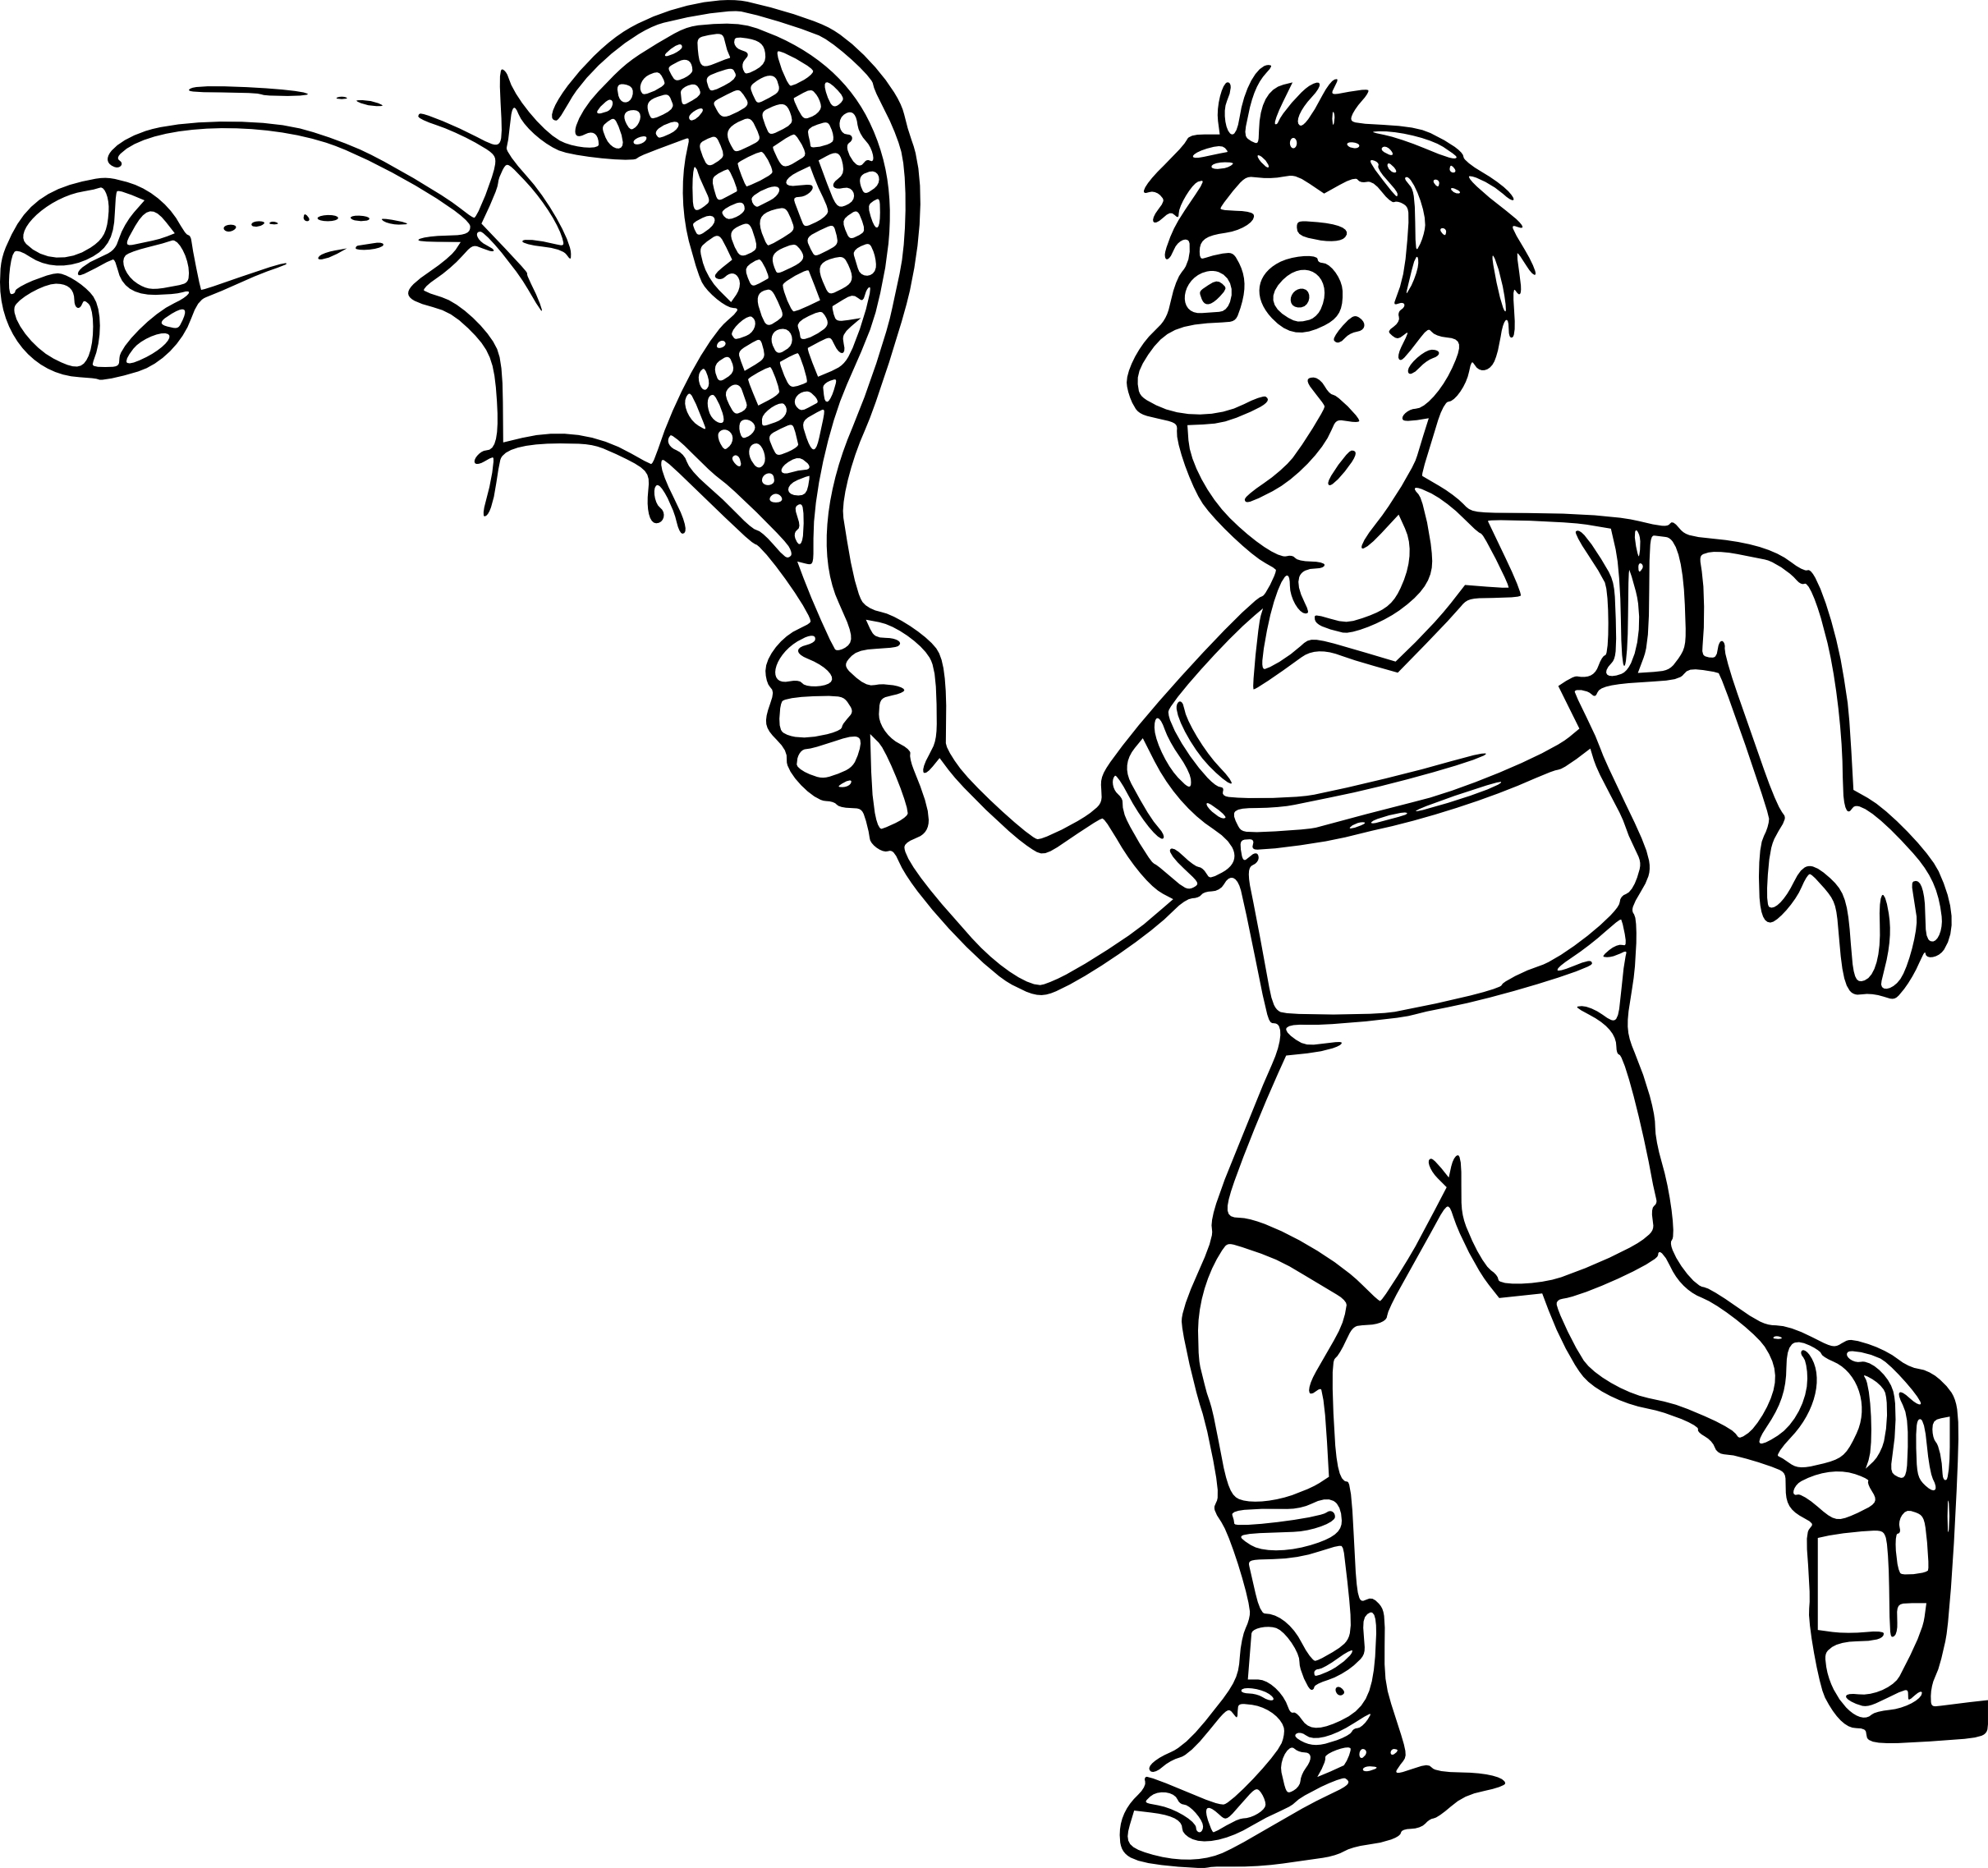 Tennis dessin